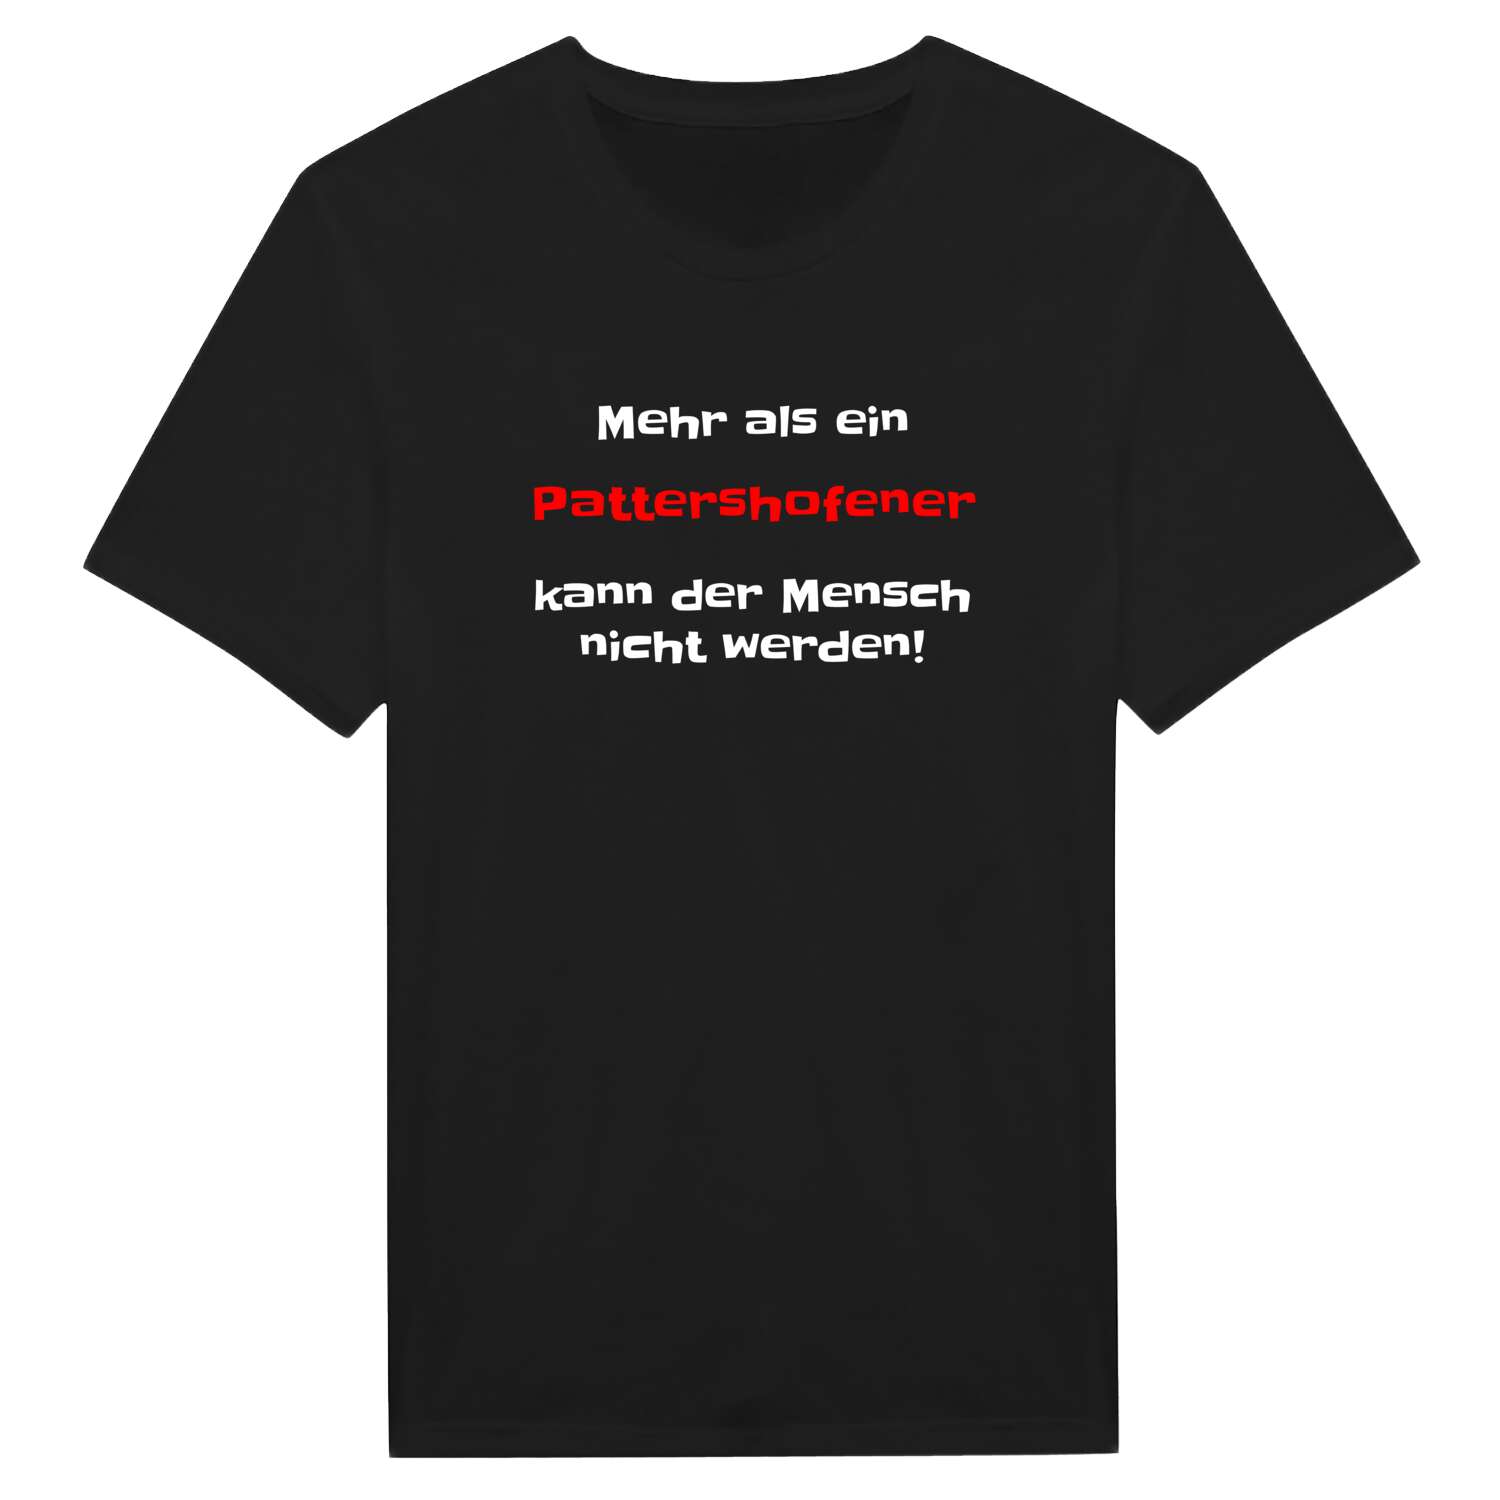 Pattershofen T-Shirt »Mehr als ein«